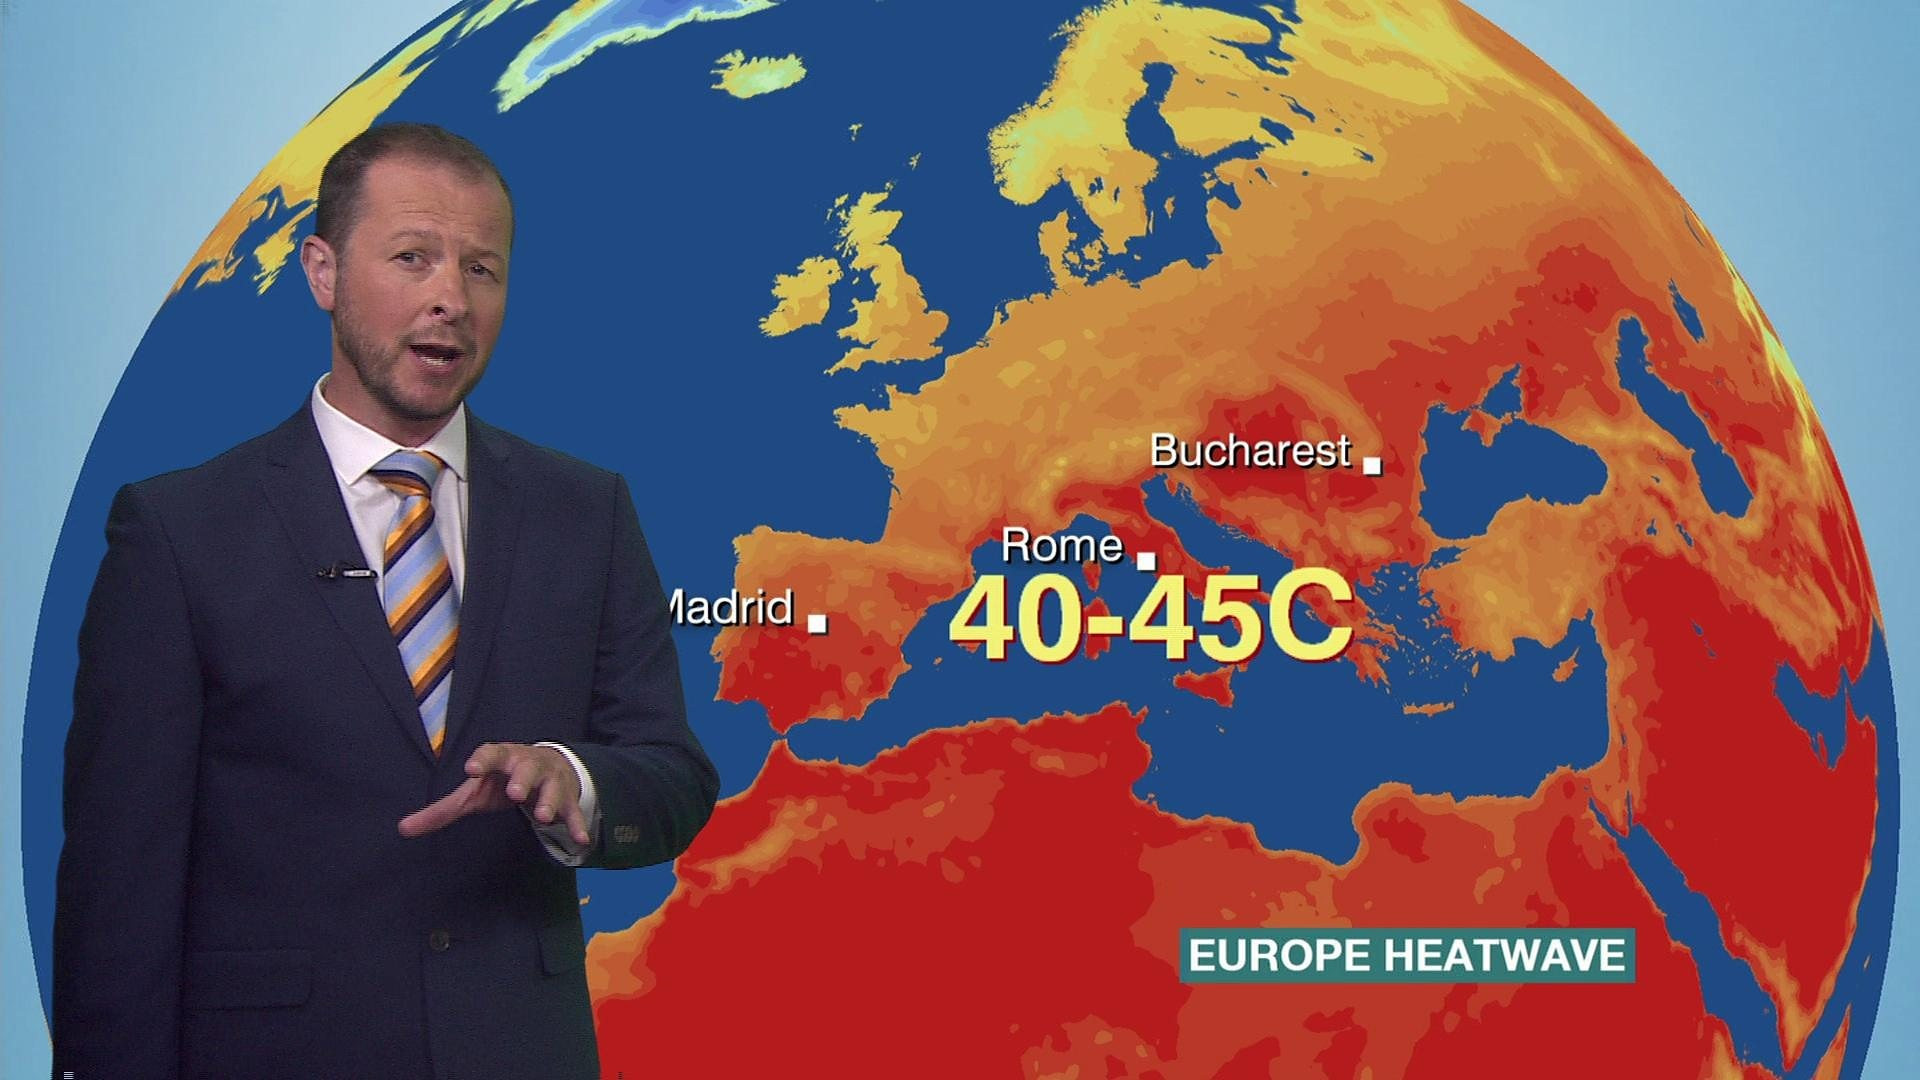 Dự báo thời tiết cho thấy nắng nóng đang bao trùm nhiều nơi tại châu Âu